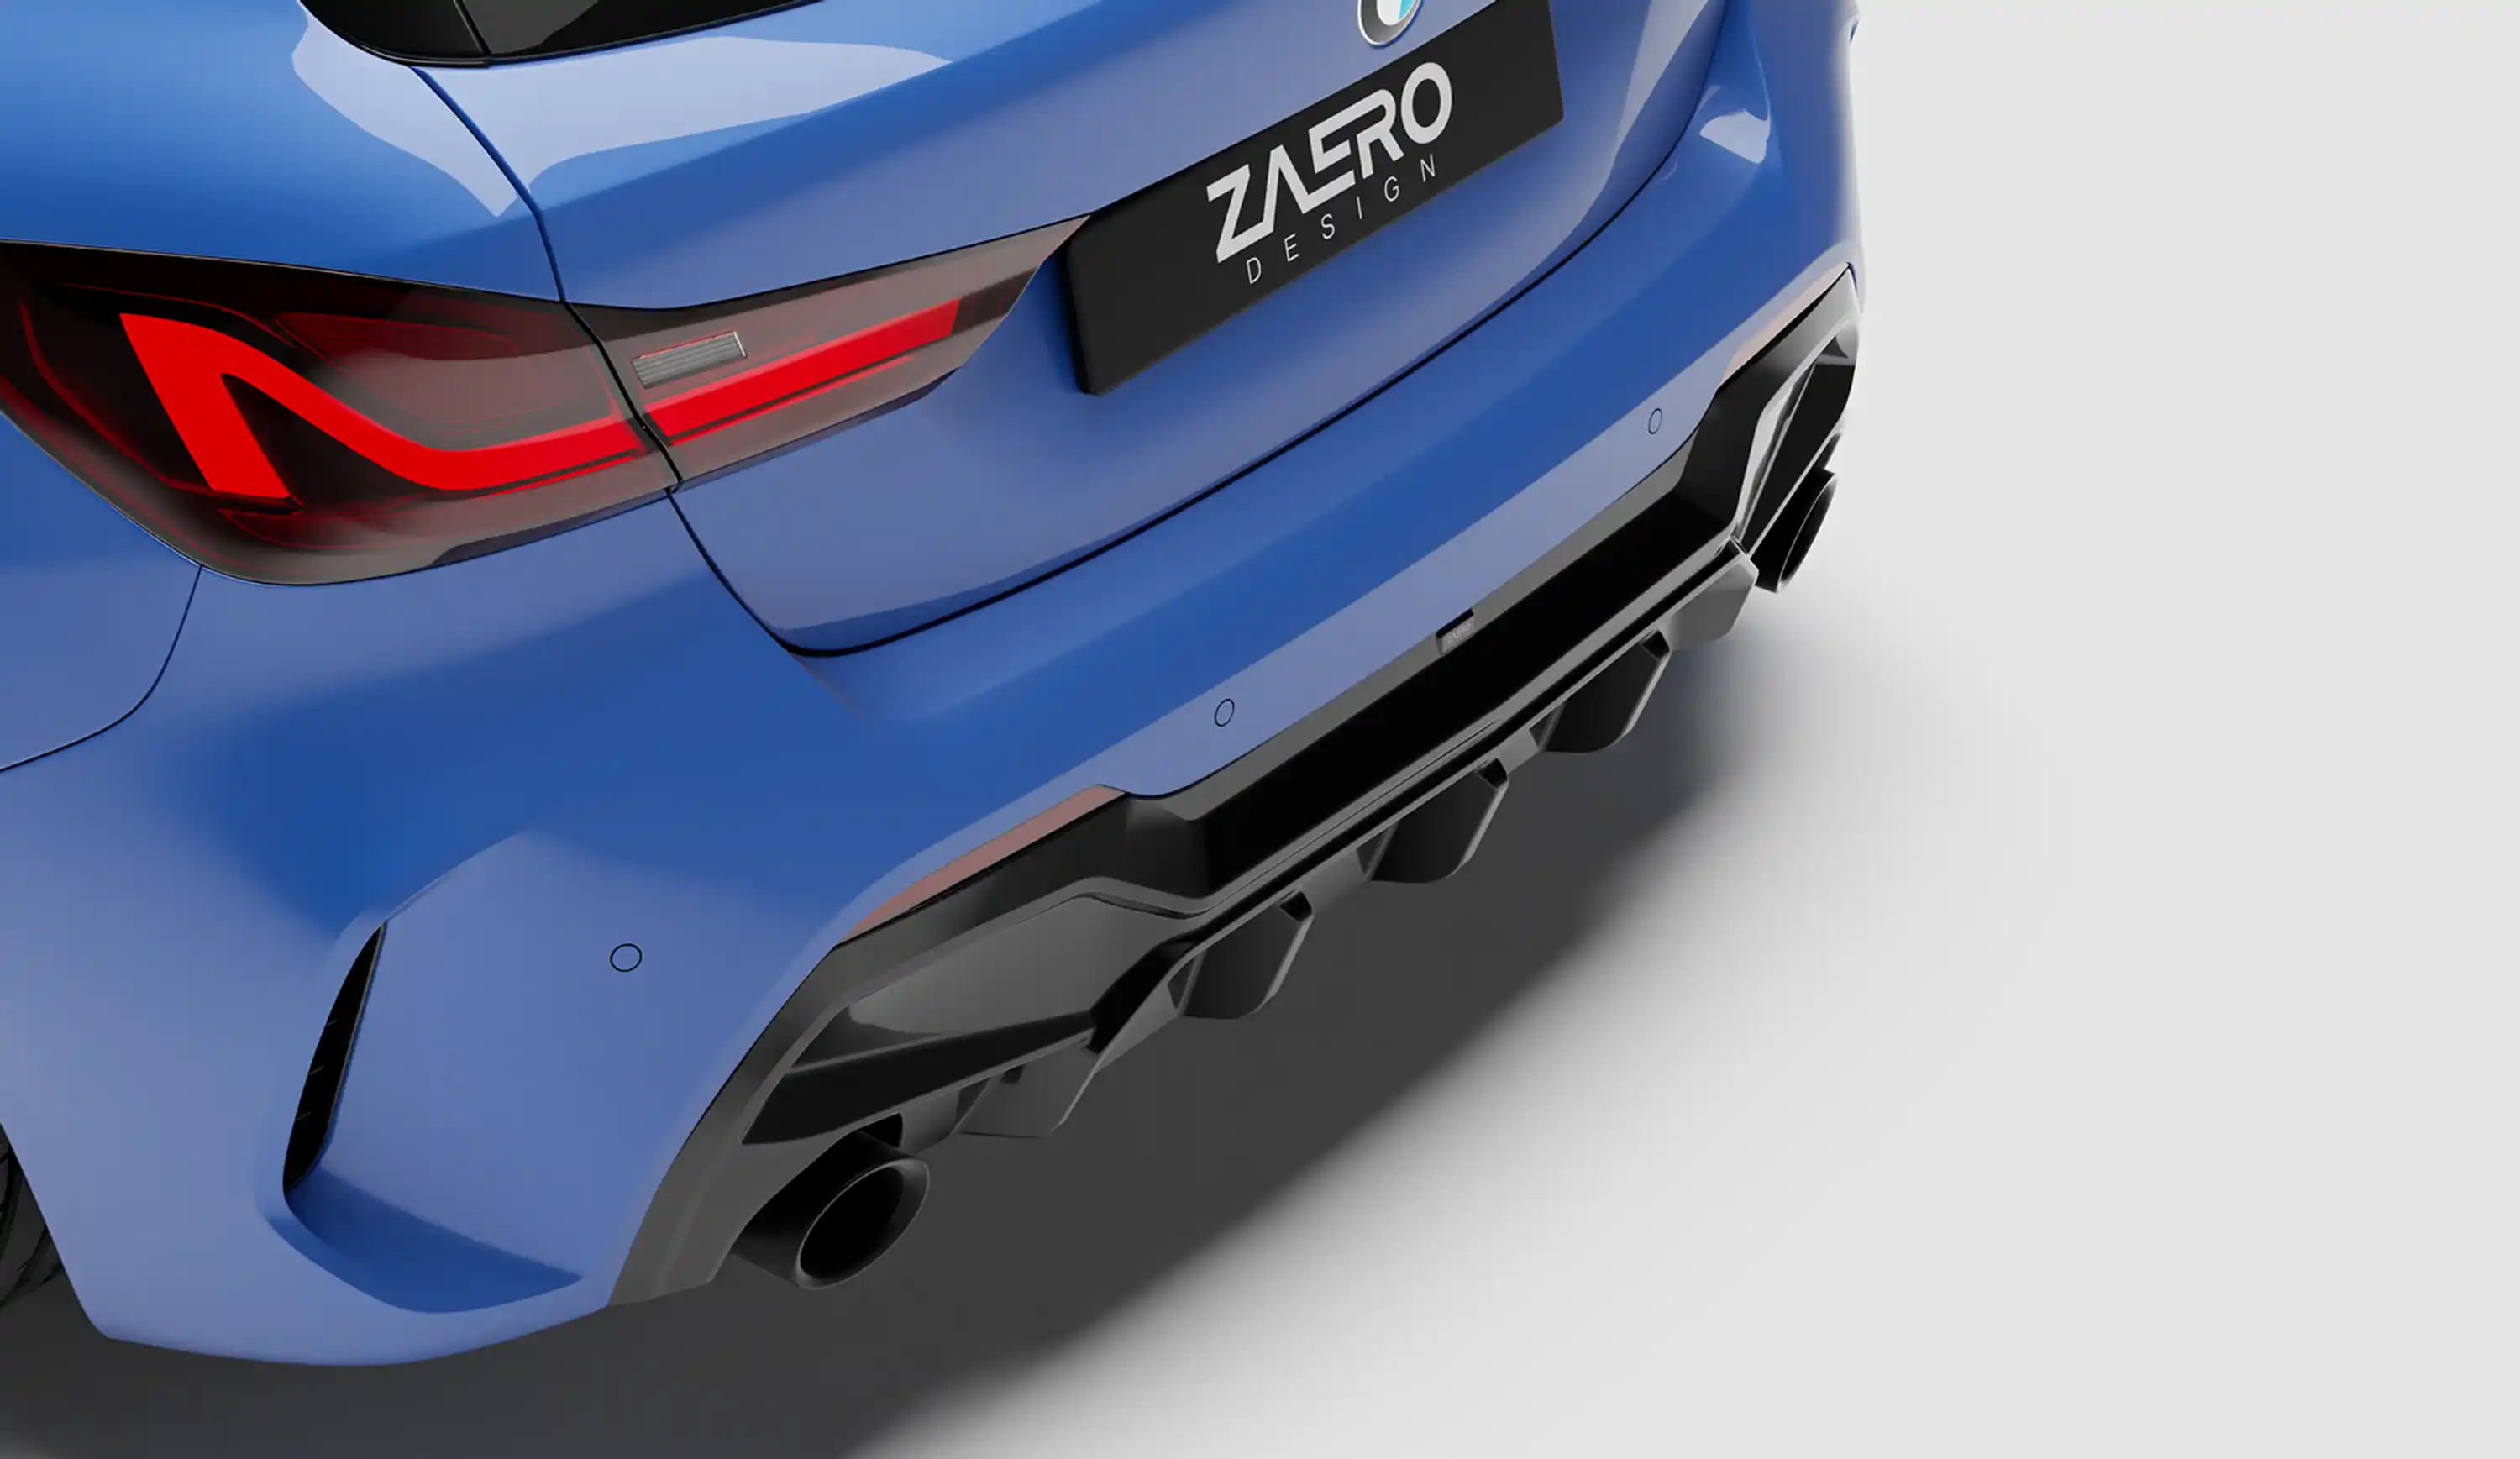 ZAERO DESIGN Diffuser for BMW 1-Series F40